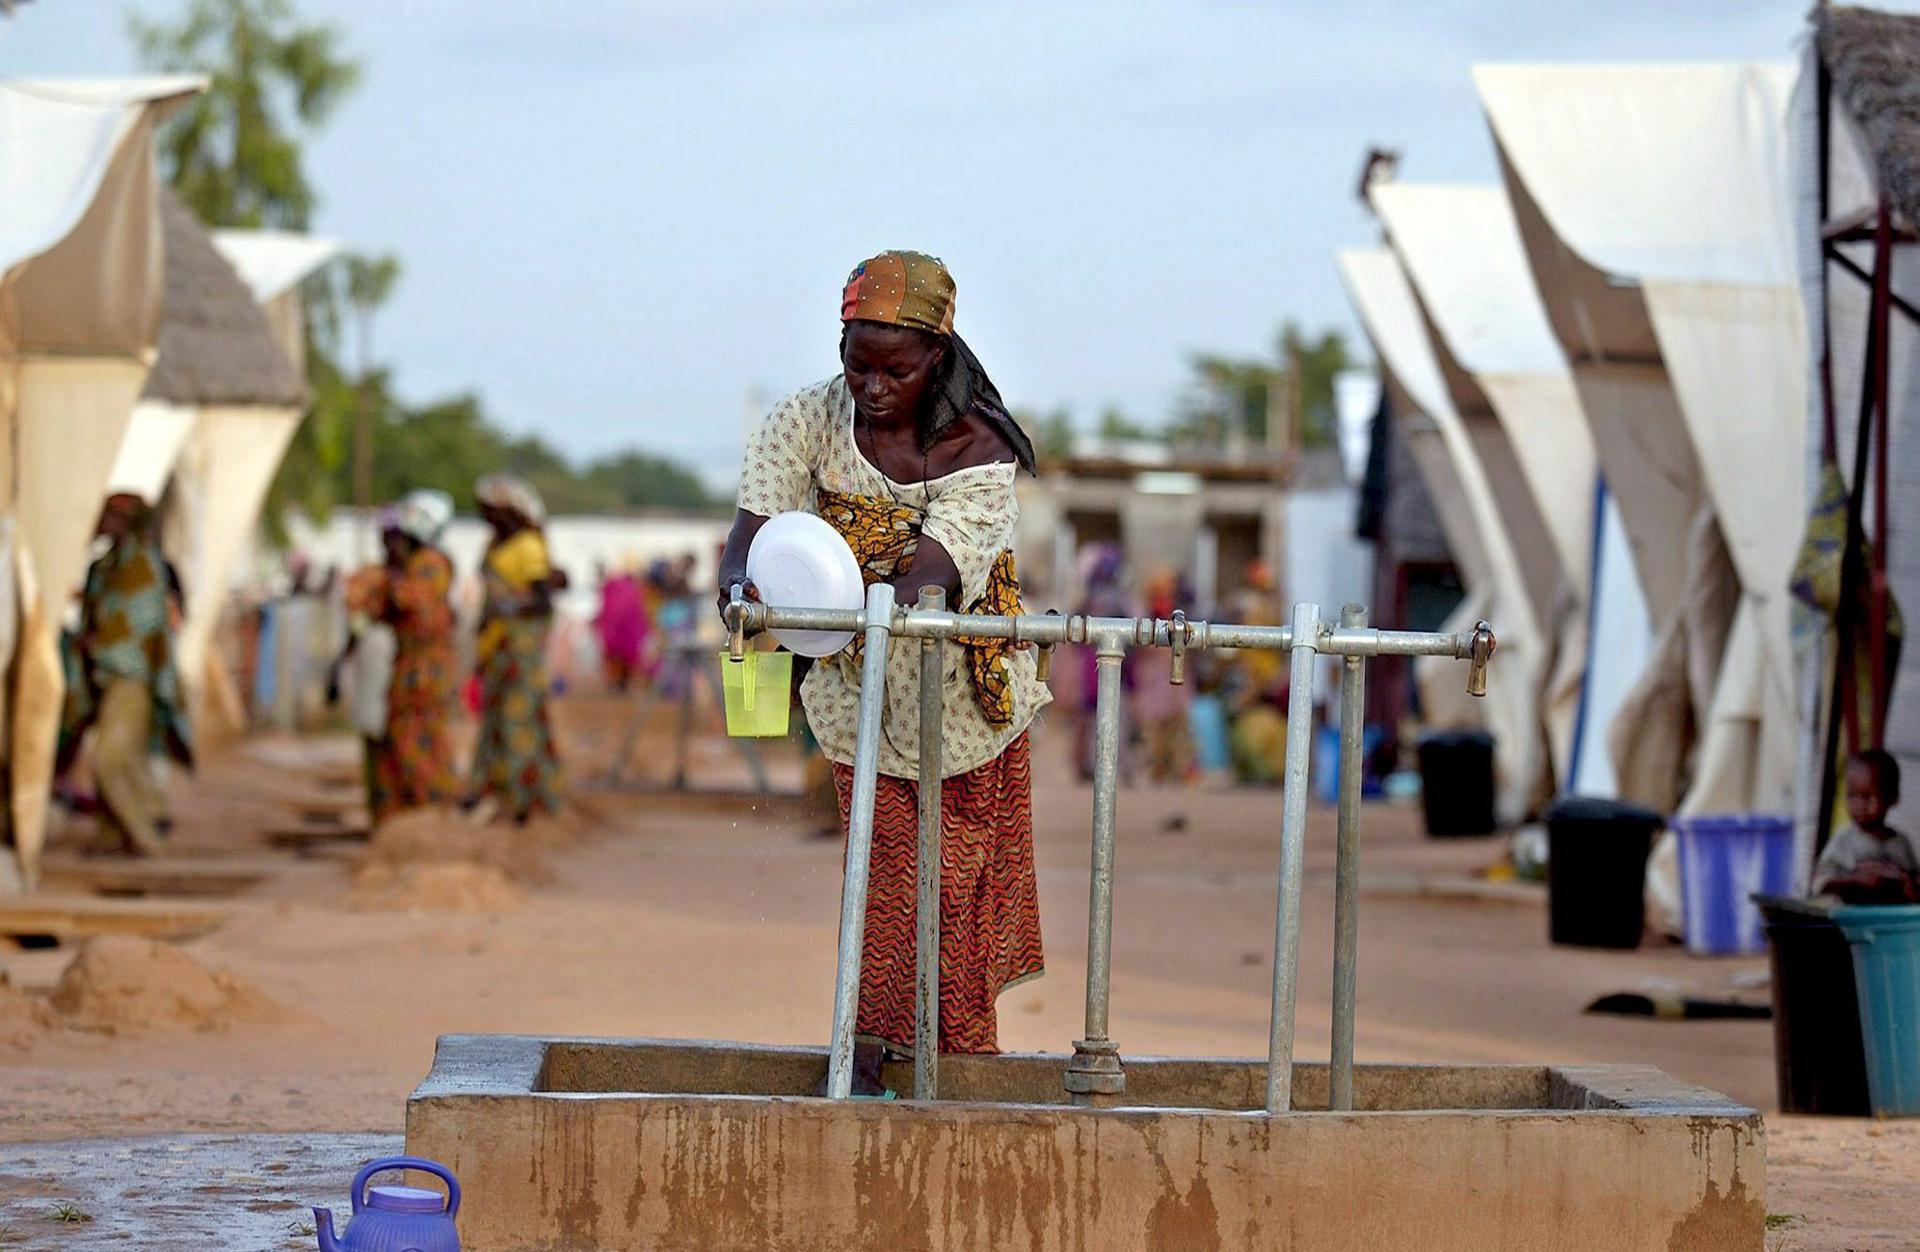 ONU: Hasta 34,5 millones de personas necesitan ayuda humanitaria en la región del Sahel